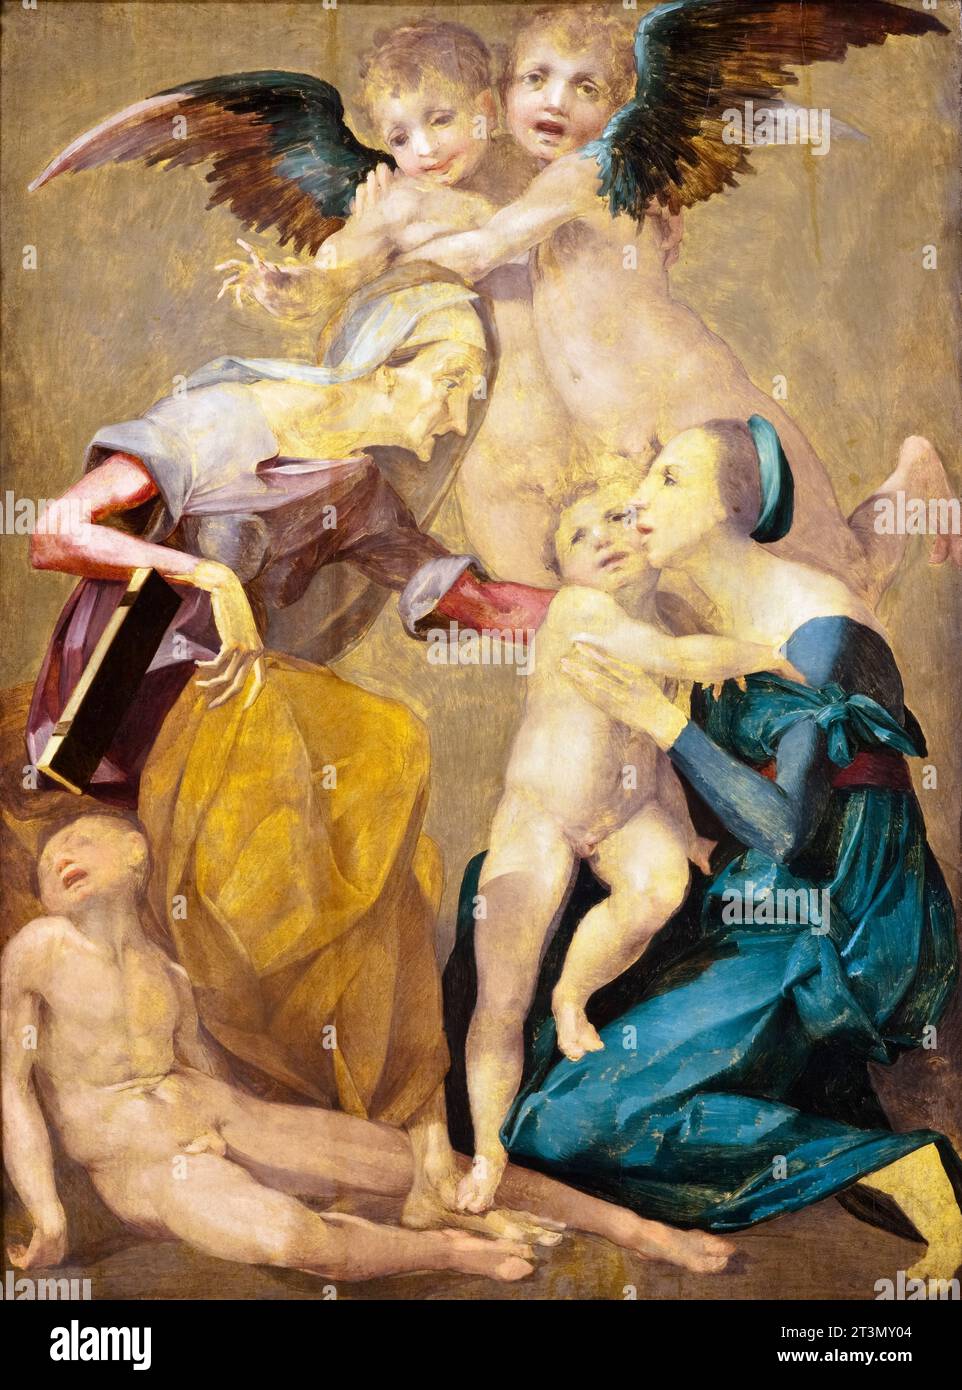 Giovanni Battista di Jacopo detto Rosso Fiorentino, Allegoria della salvezza con la Vergine e Cristo bambino, Santa Elisabetta, il giovane San Giovanni Battista e due Angeli, dipinto ad olio su tavola, circa 1521 Foto Stock